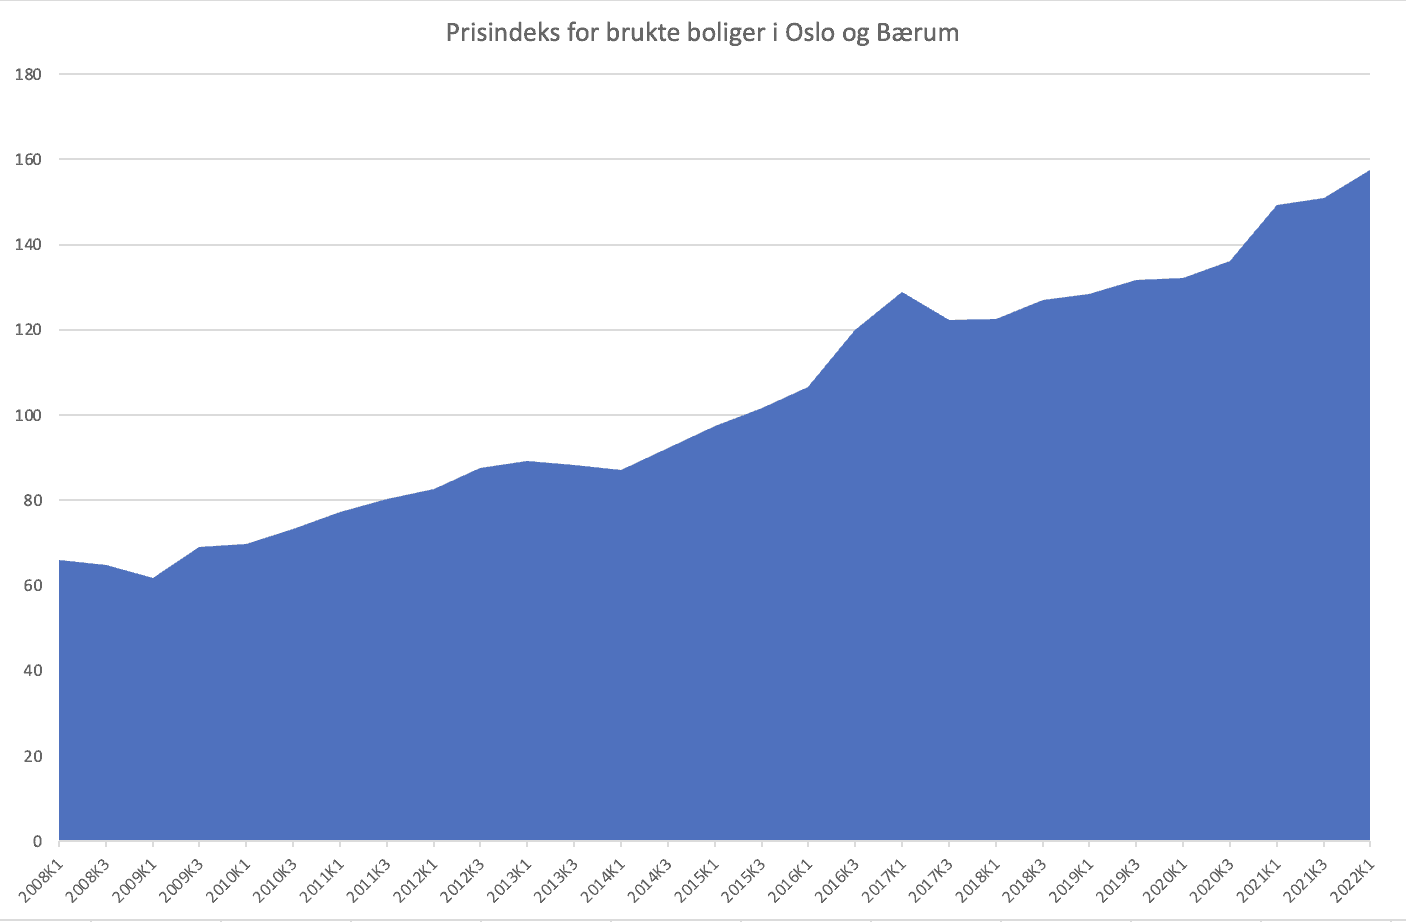 Graf som viser prisindeks for brukte boliger i Oslo og bærum